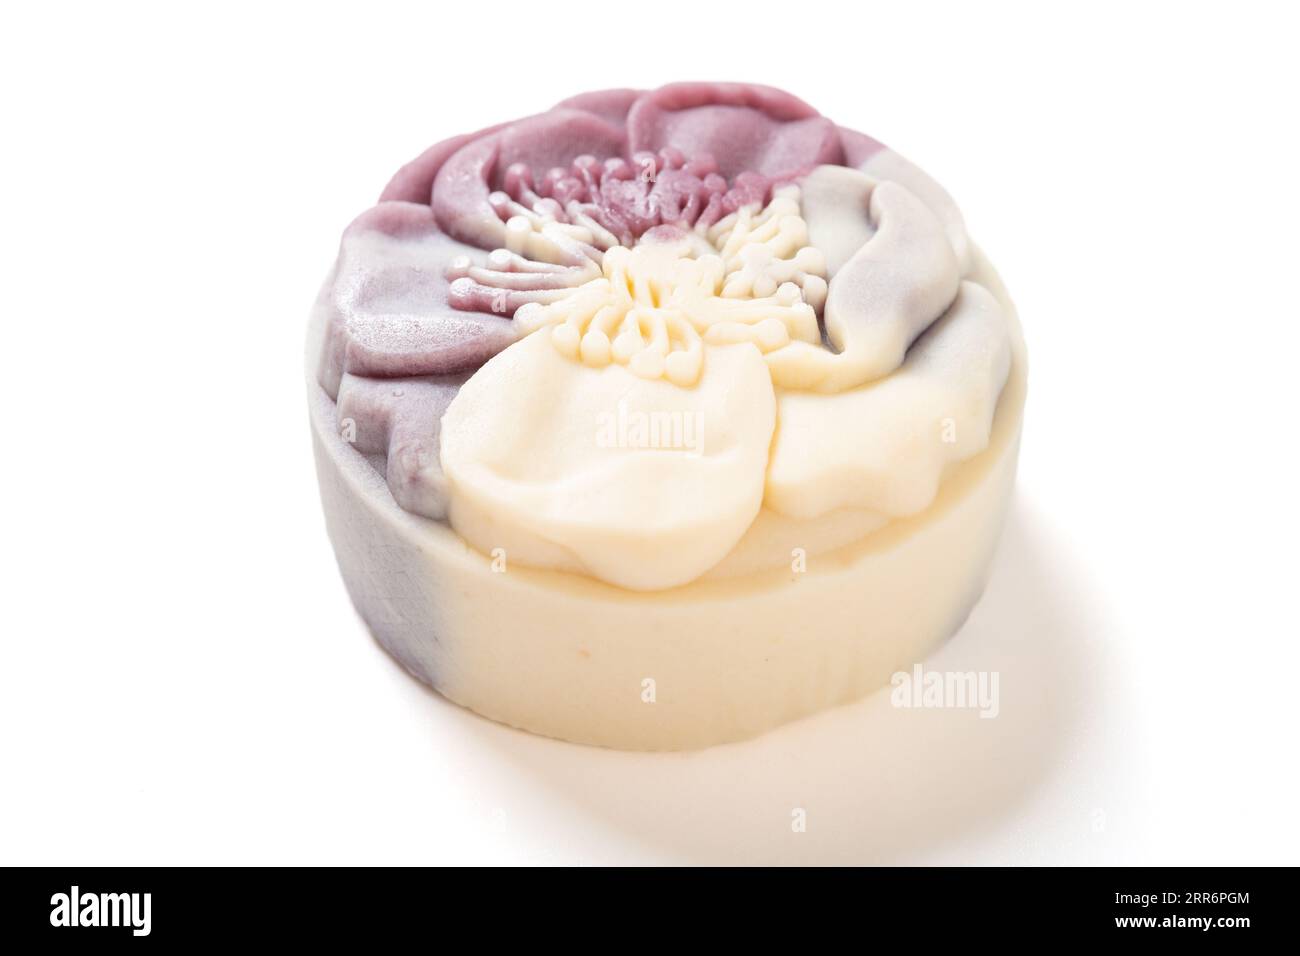 vista angolare elegante e bellissima torta luna dai colori viola e bianco su sfondo bianco Foto Stock